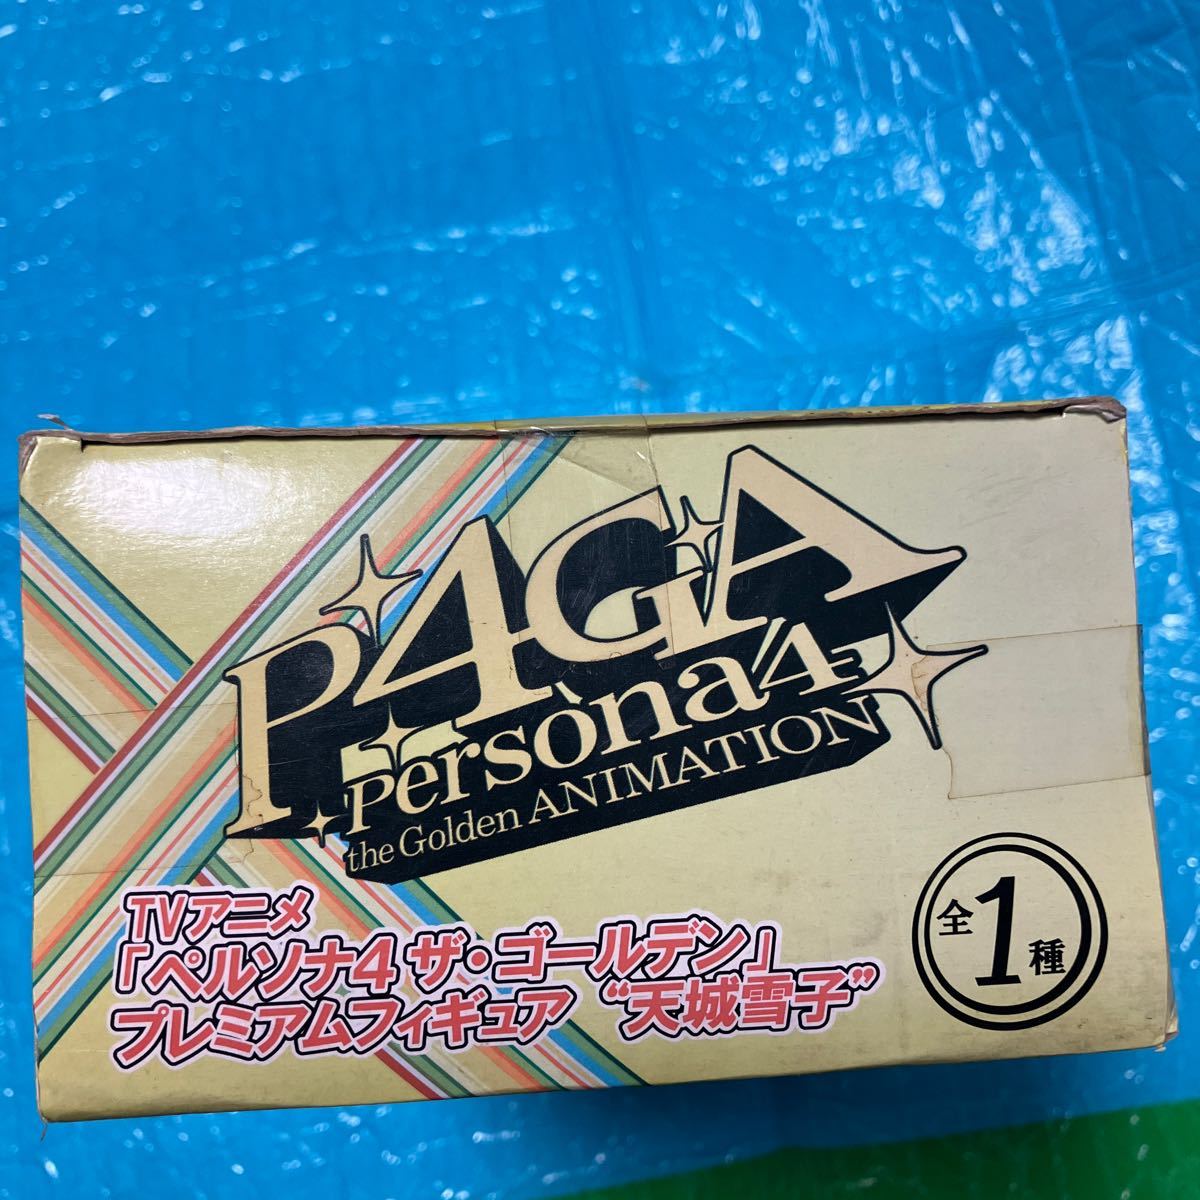 TV аниме Persona 4 золотой premium фигурка небо замок снег . новый товар нераспечатанный коробка . загрязнения, боль есть 